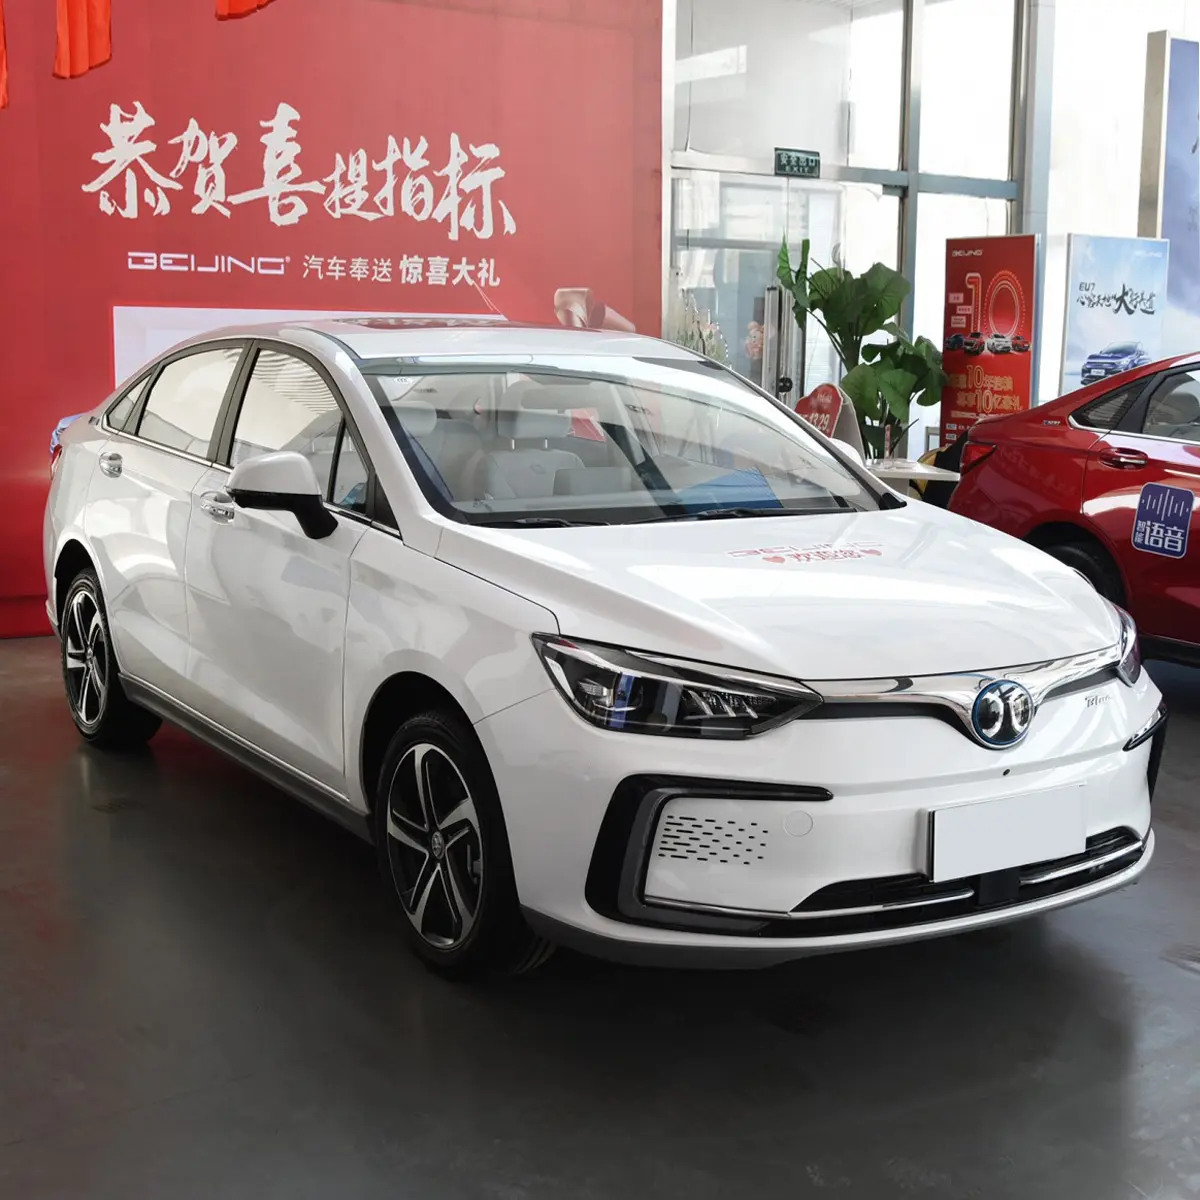 Baic Eu5 Beijing Eu5 Automotive Carros Usados Veículos de Nova Energia Carro Elétrico carros elétricos para venda europa da china